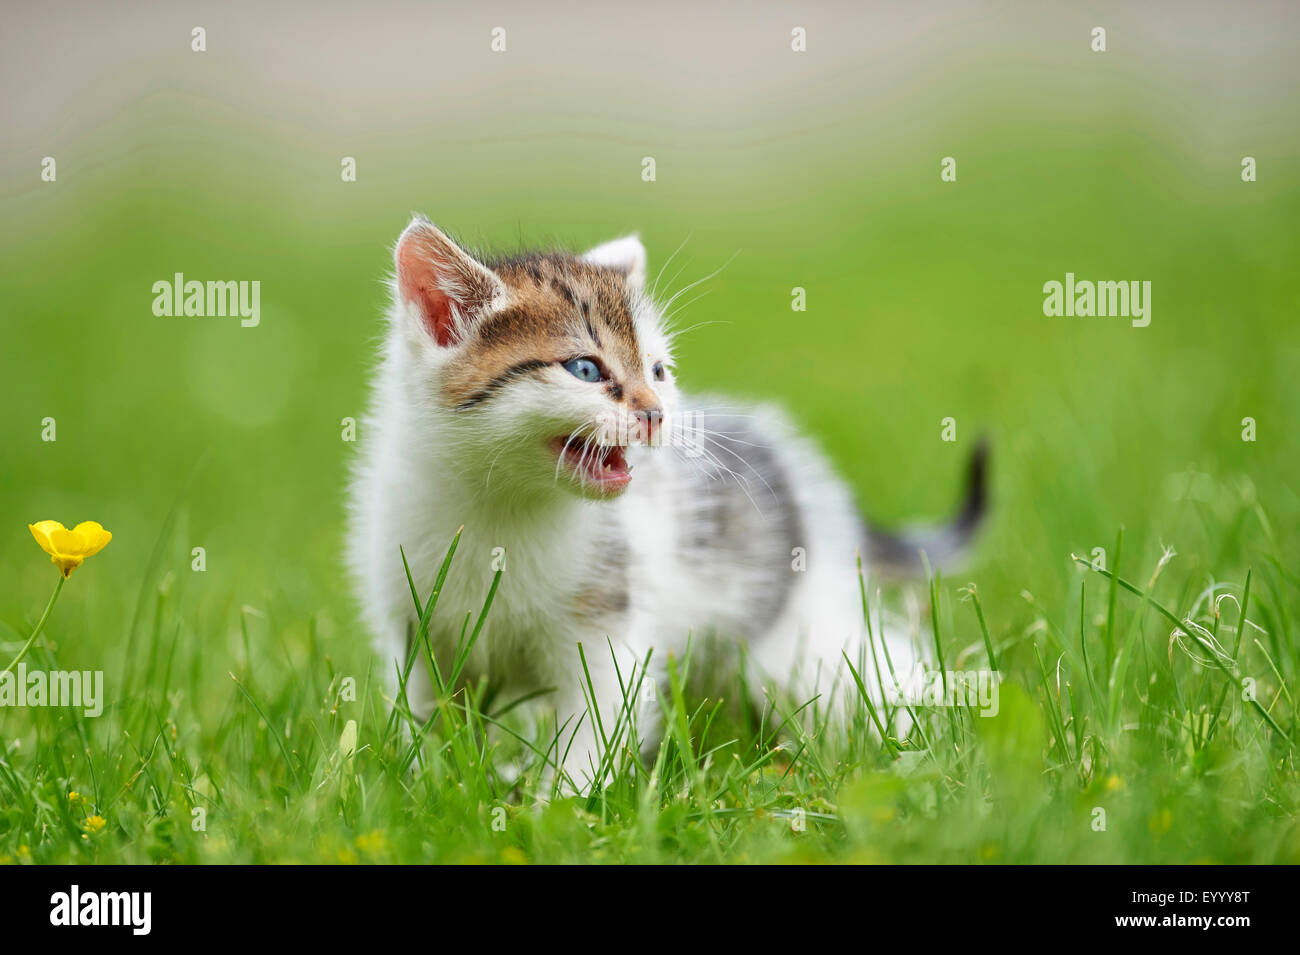 Chat domestique, le chat domestique (Felis silvestris catus) f., 6 semaines caterwauling chaton dans un pré, Allemagne Banque D'Images